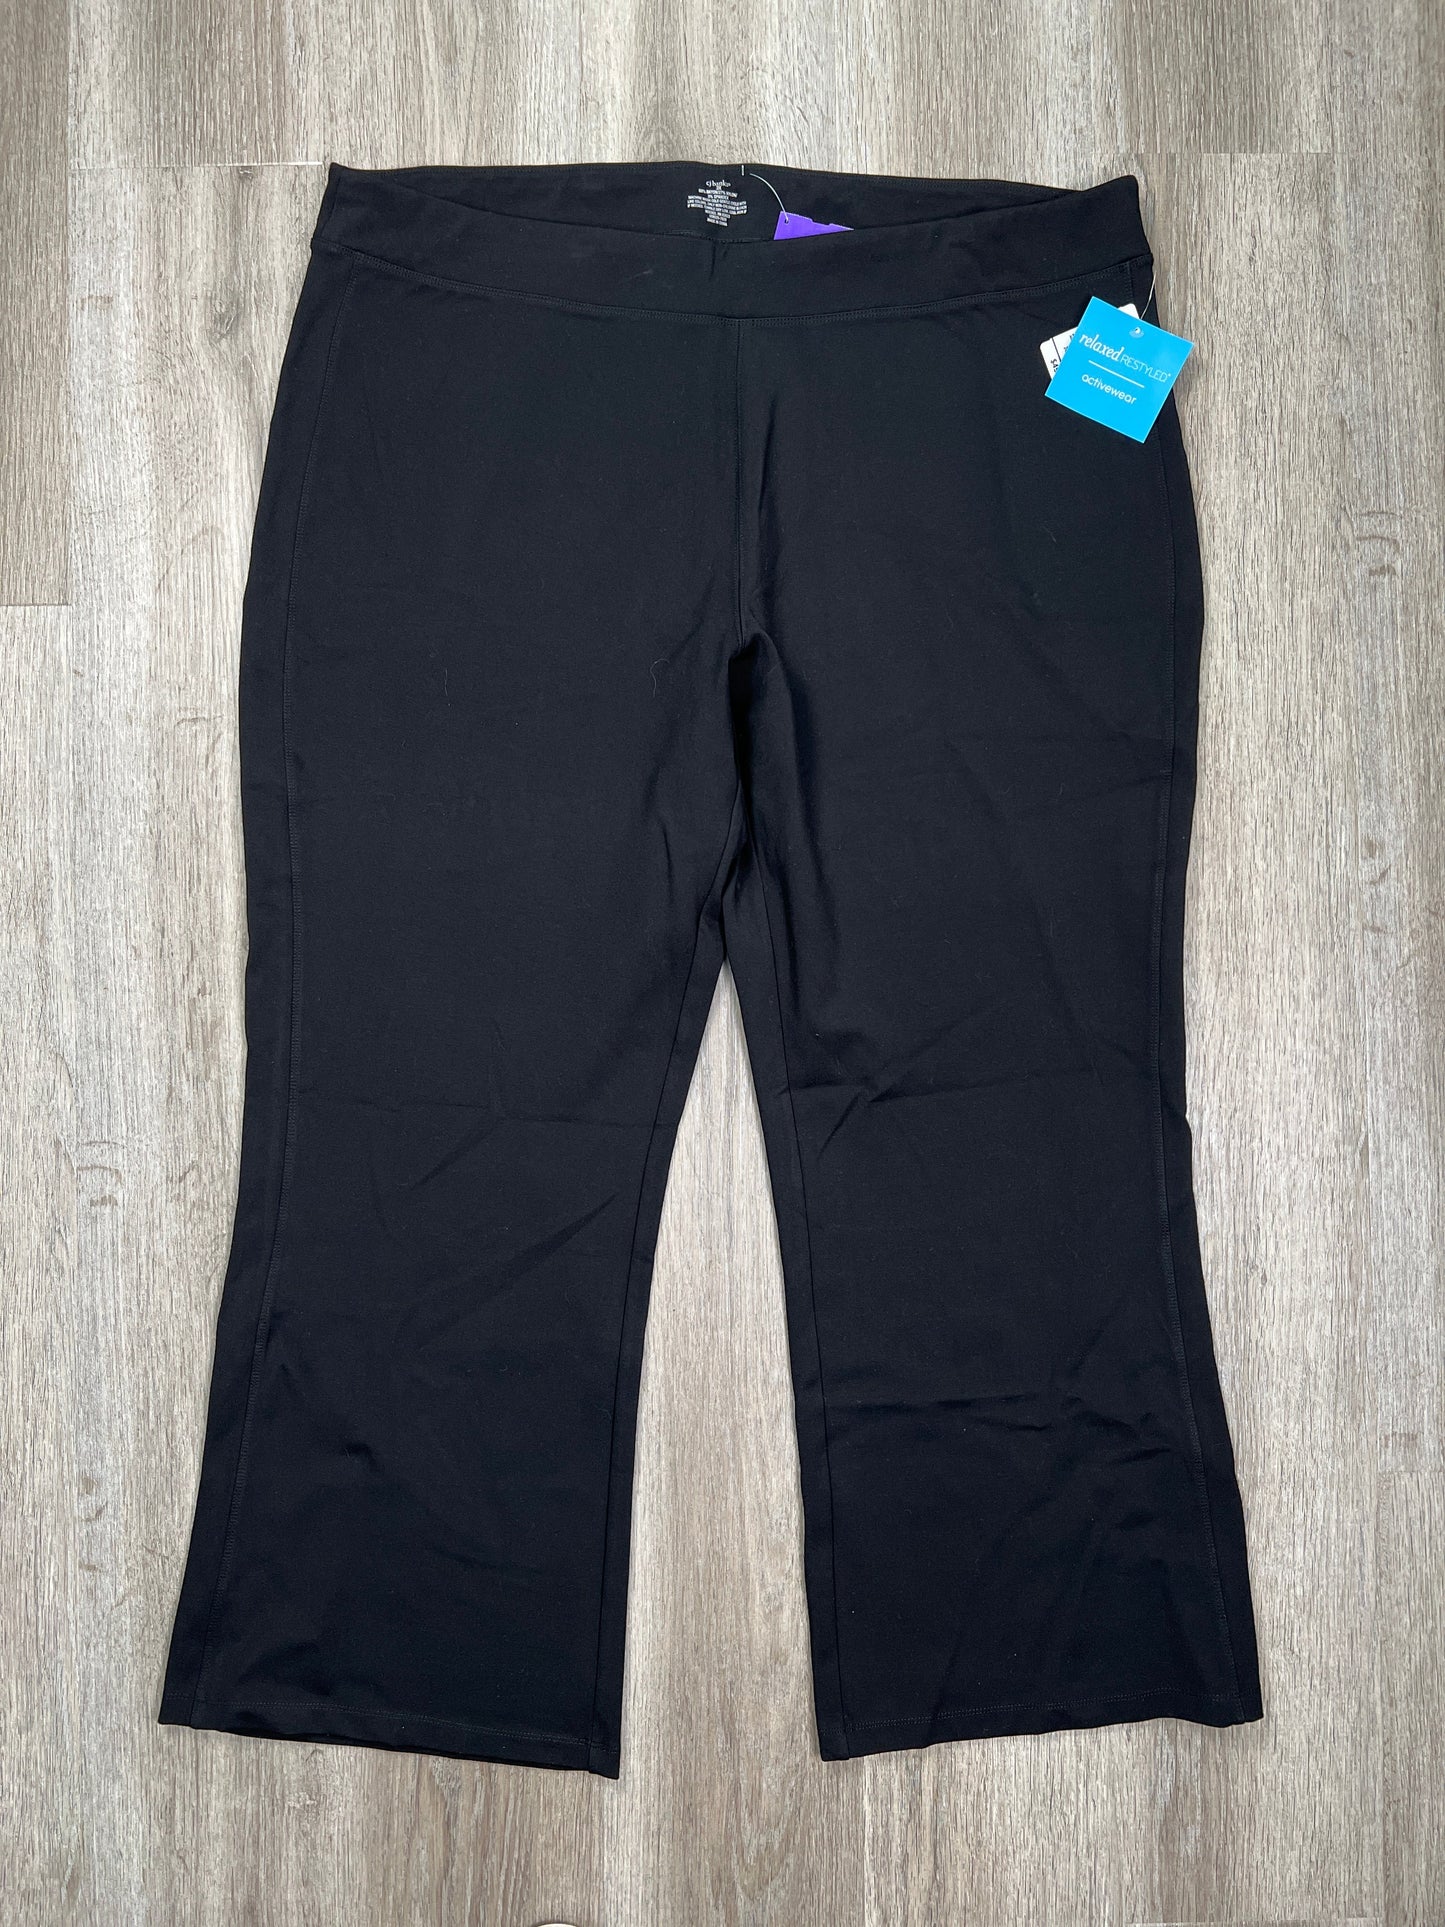 Black Pants Dress Cj Banks, Size 3x